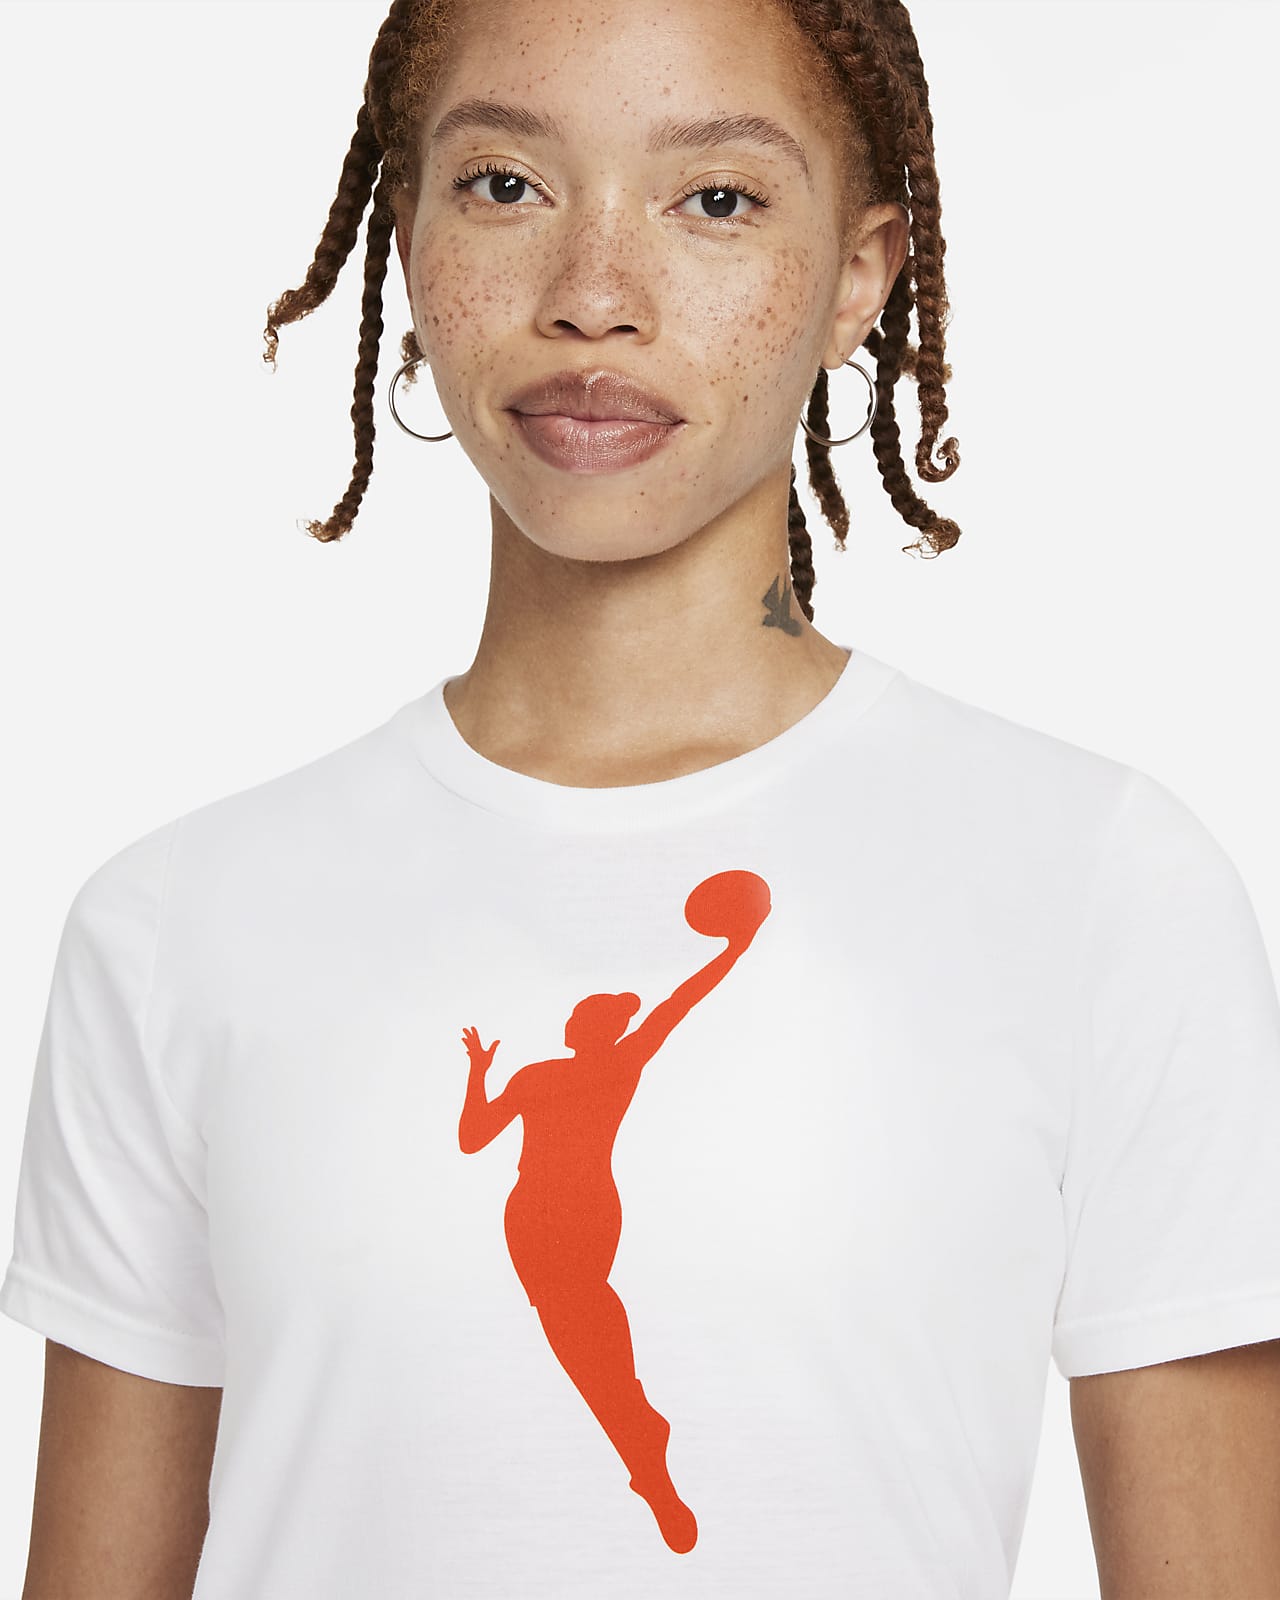 Previamente ventana partido Republicano Team 13 Camiseta Nike WNBA - Niño/a. Nike ES